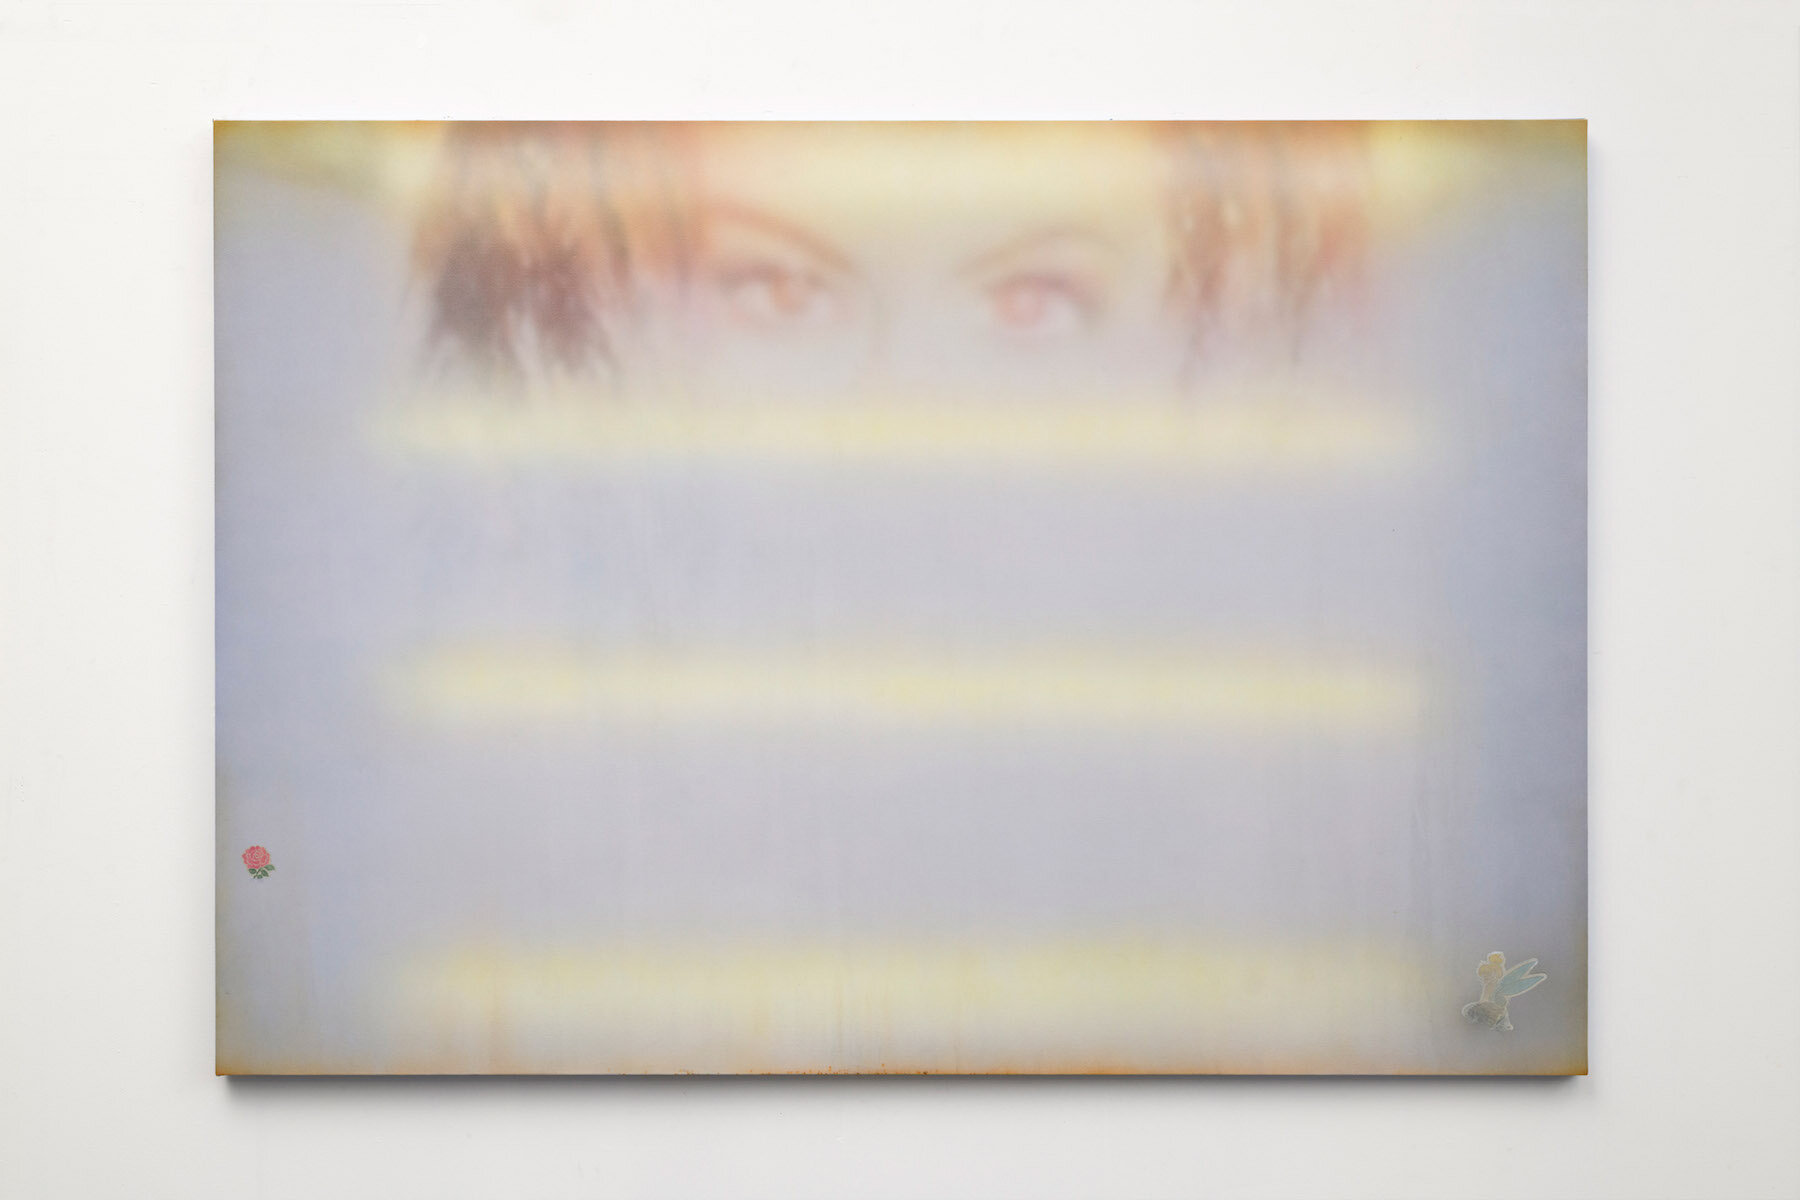   The Salon [Lightbox],  2018. Acrylic on canvas. 50 x 72 inches 